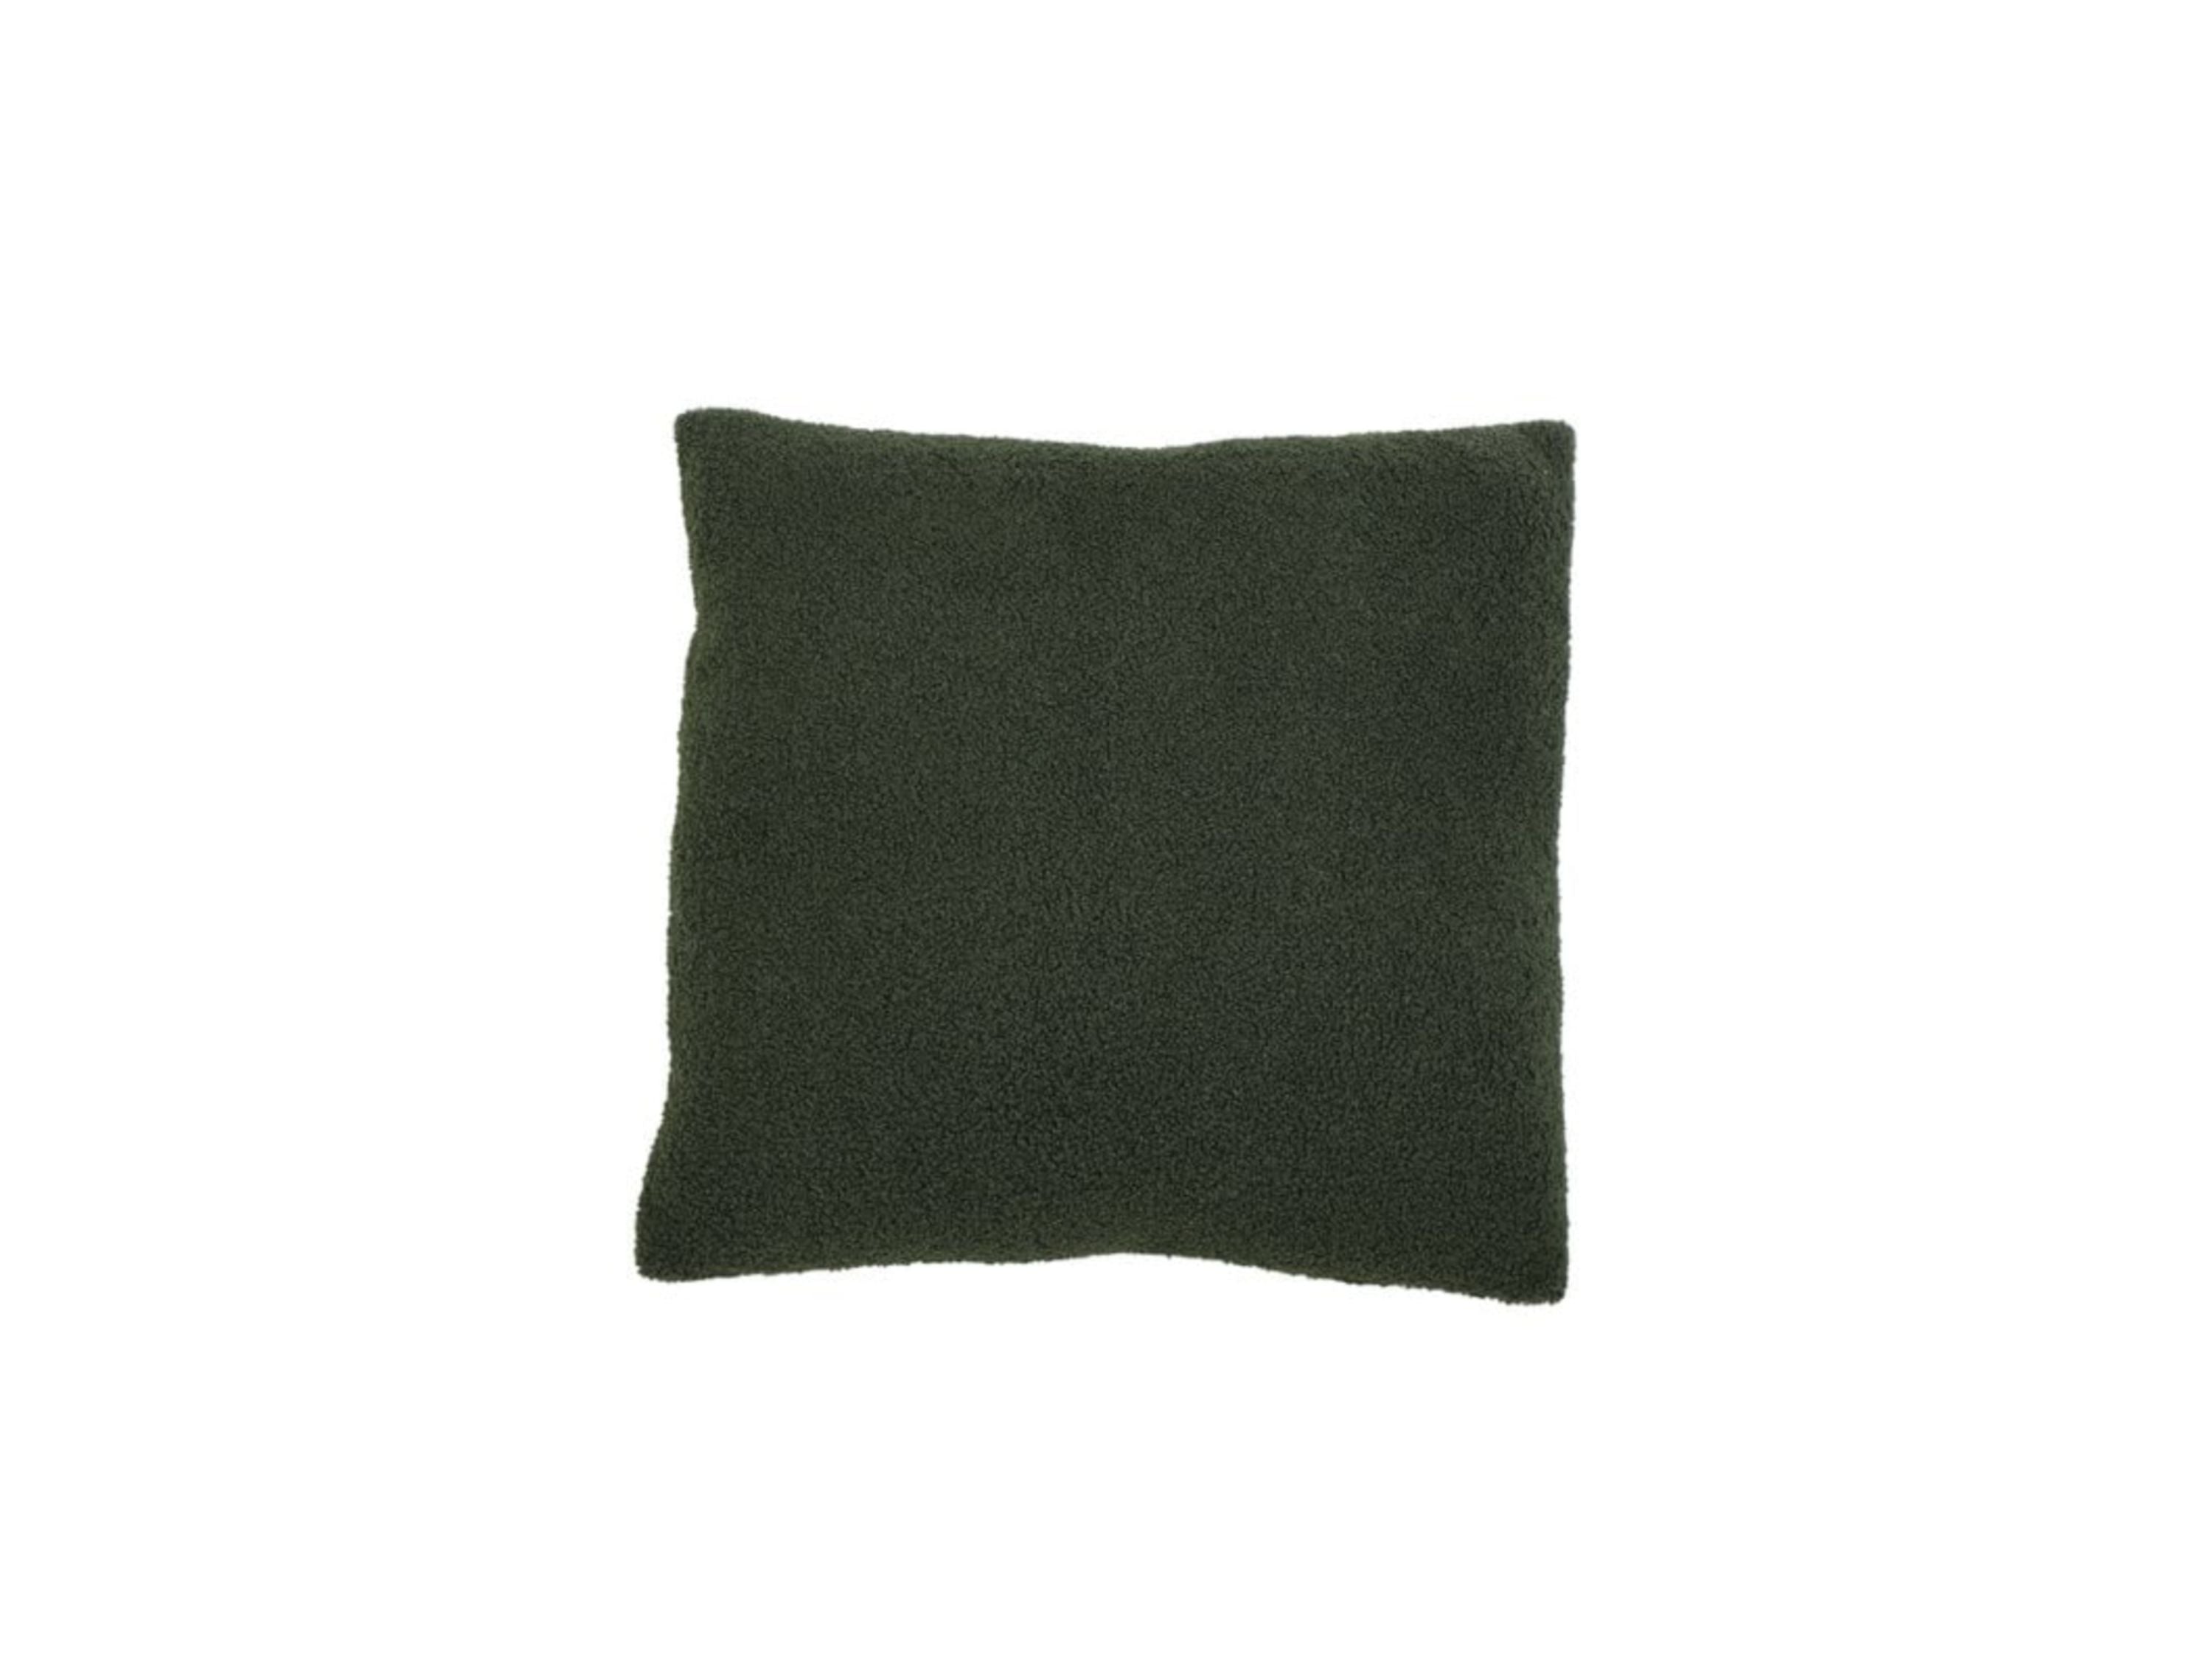 Pillows: Garden Green Pillow